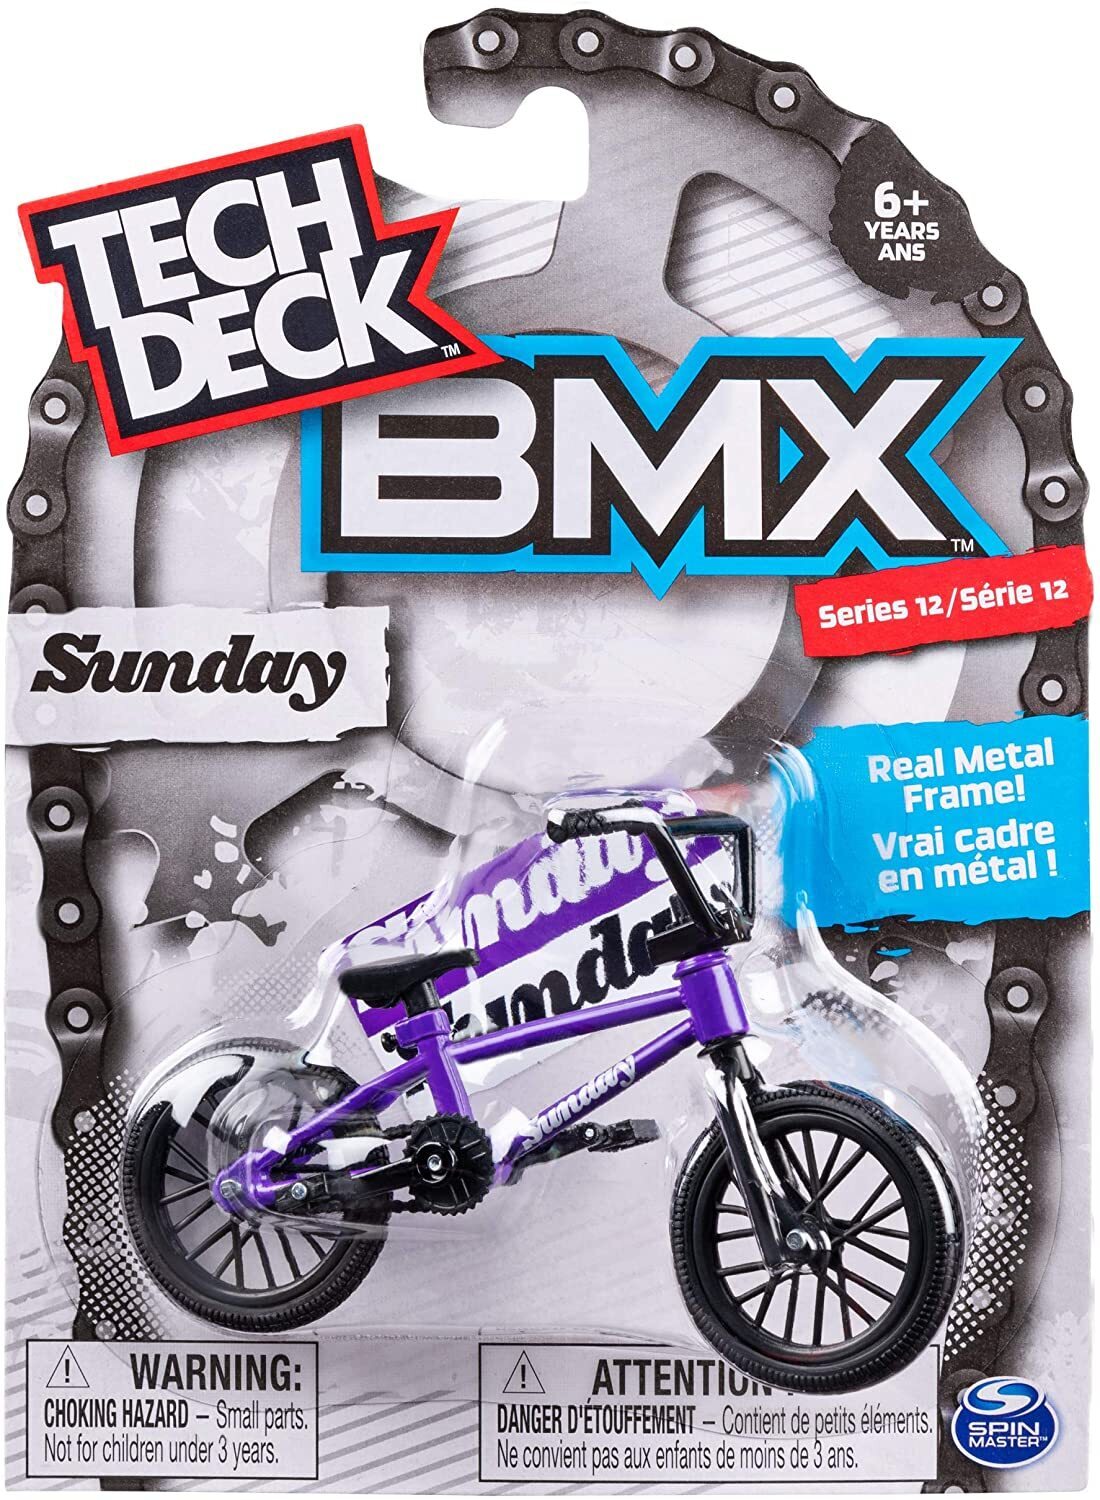 Tech Deck - BMX - Fult